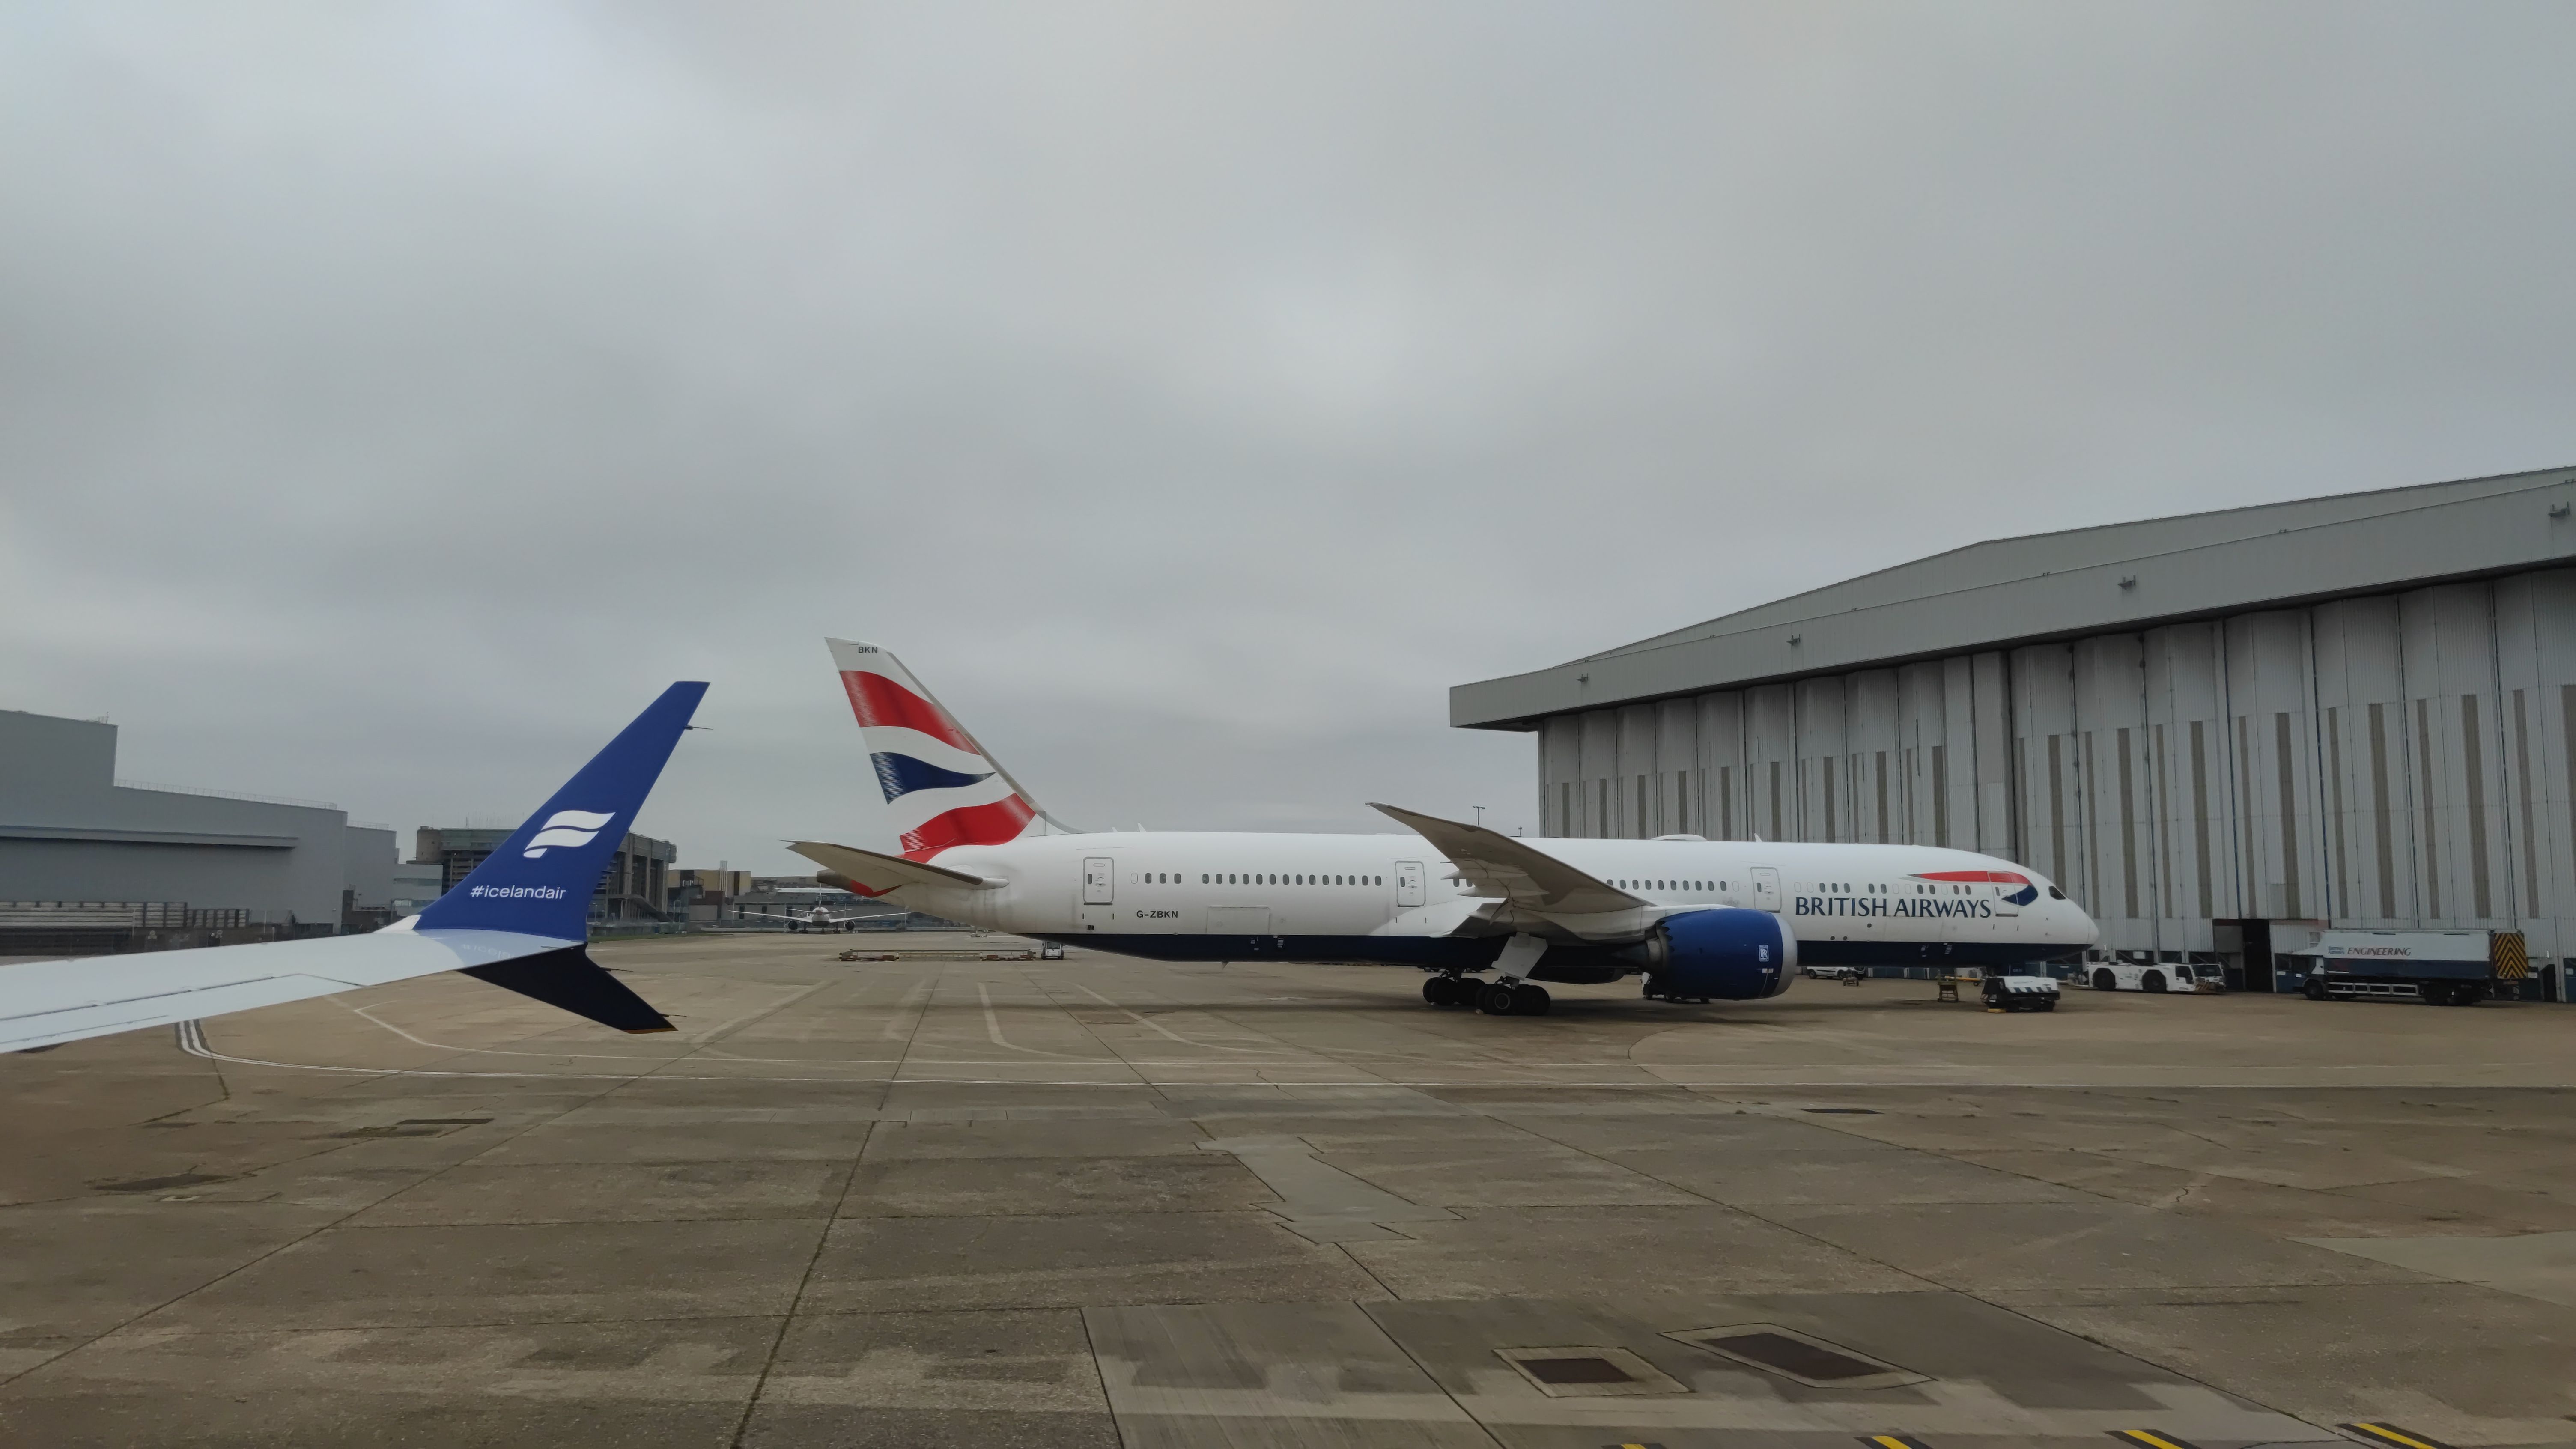 A British Airways aircraft parked in Heathrow